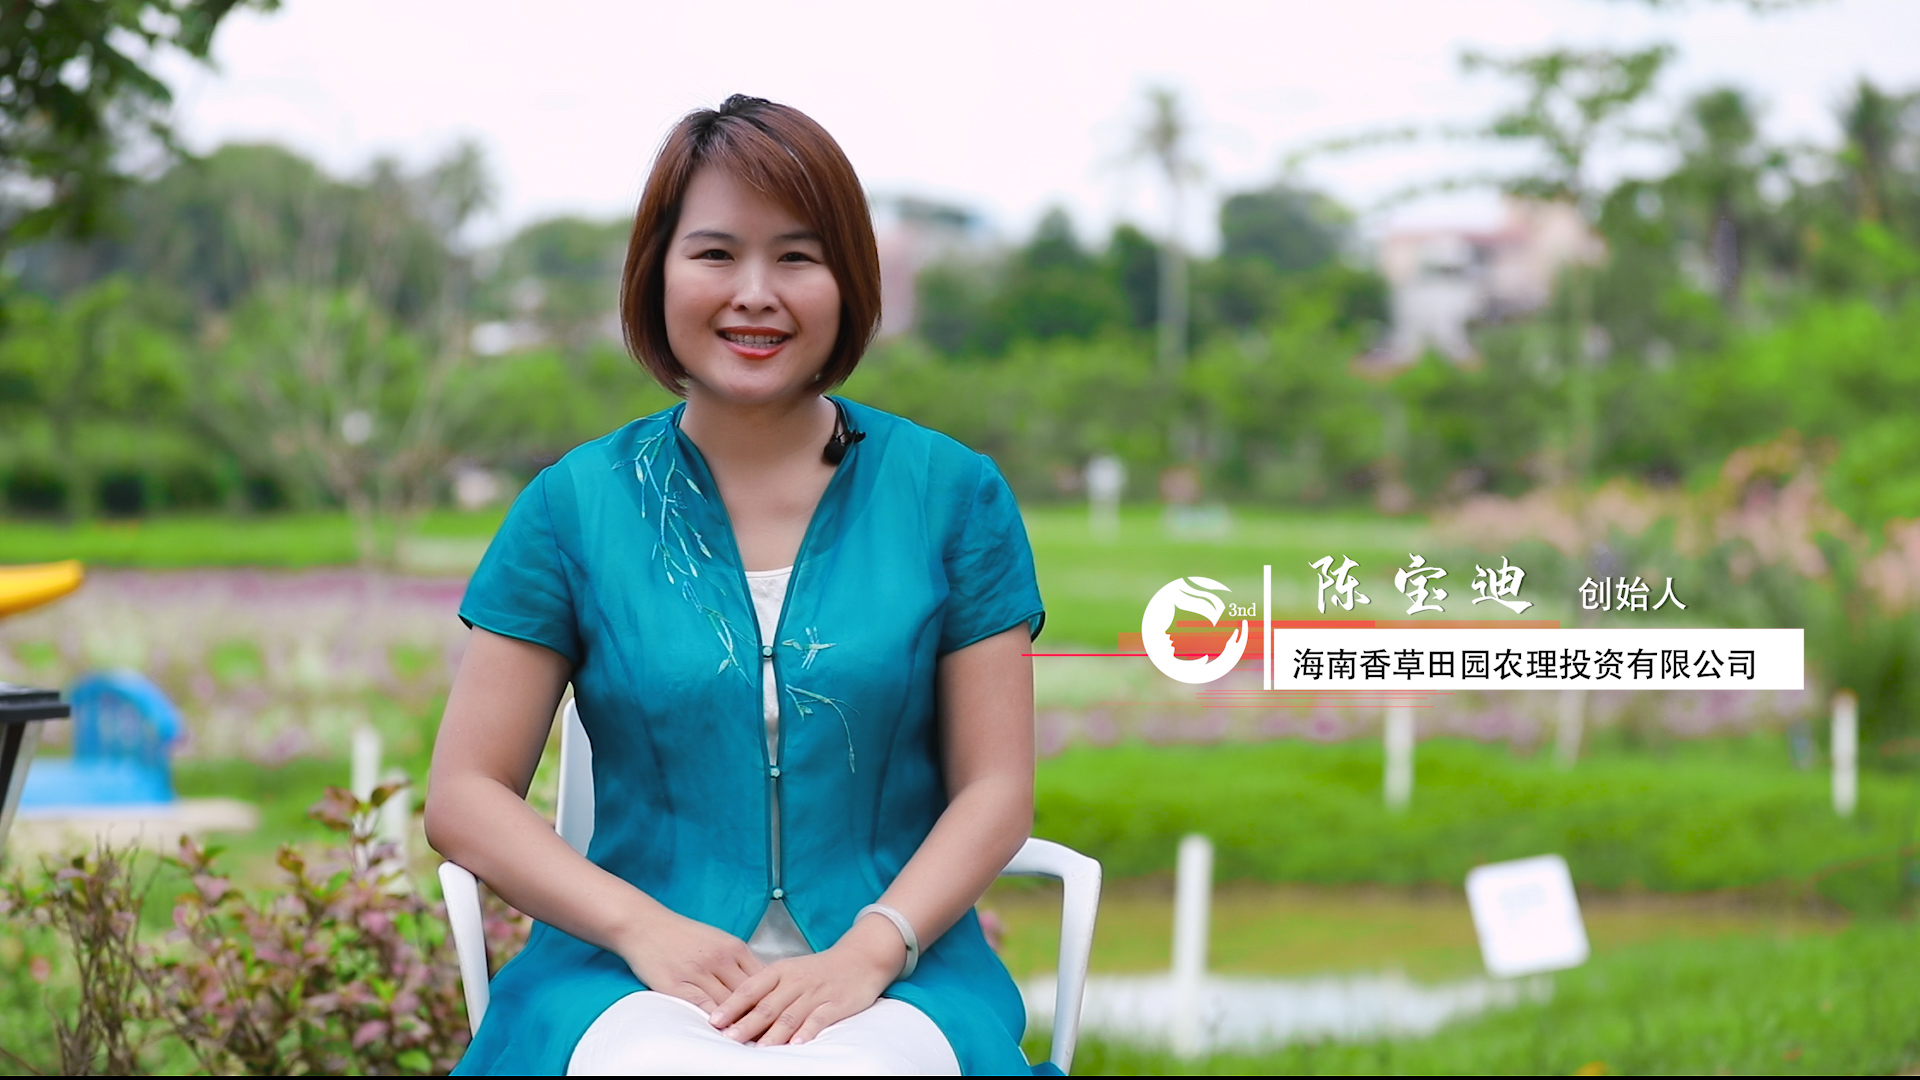 海南省妇联为您讲述2021年创业海姑娘的故事之二十八：陈宝迪——生活不止眼前，还有香草田园